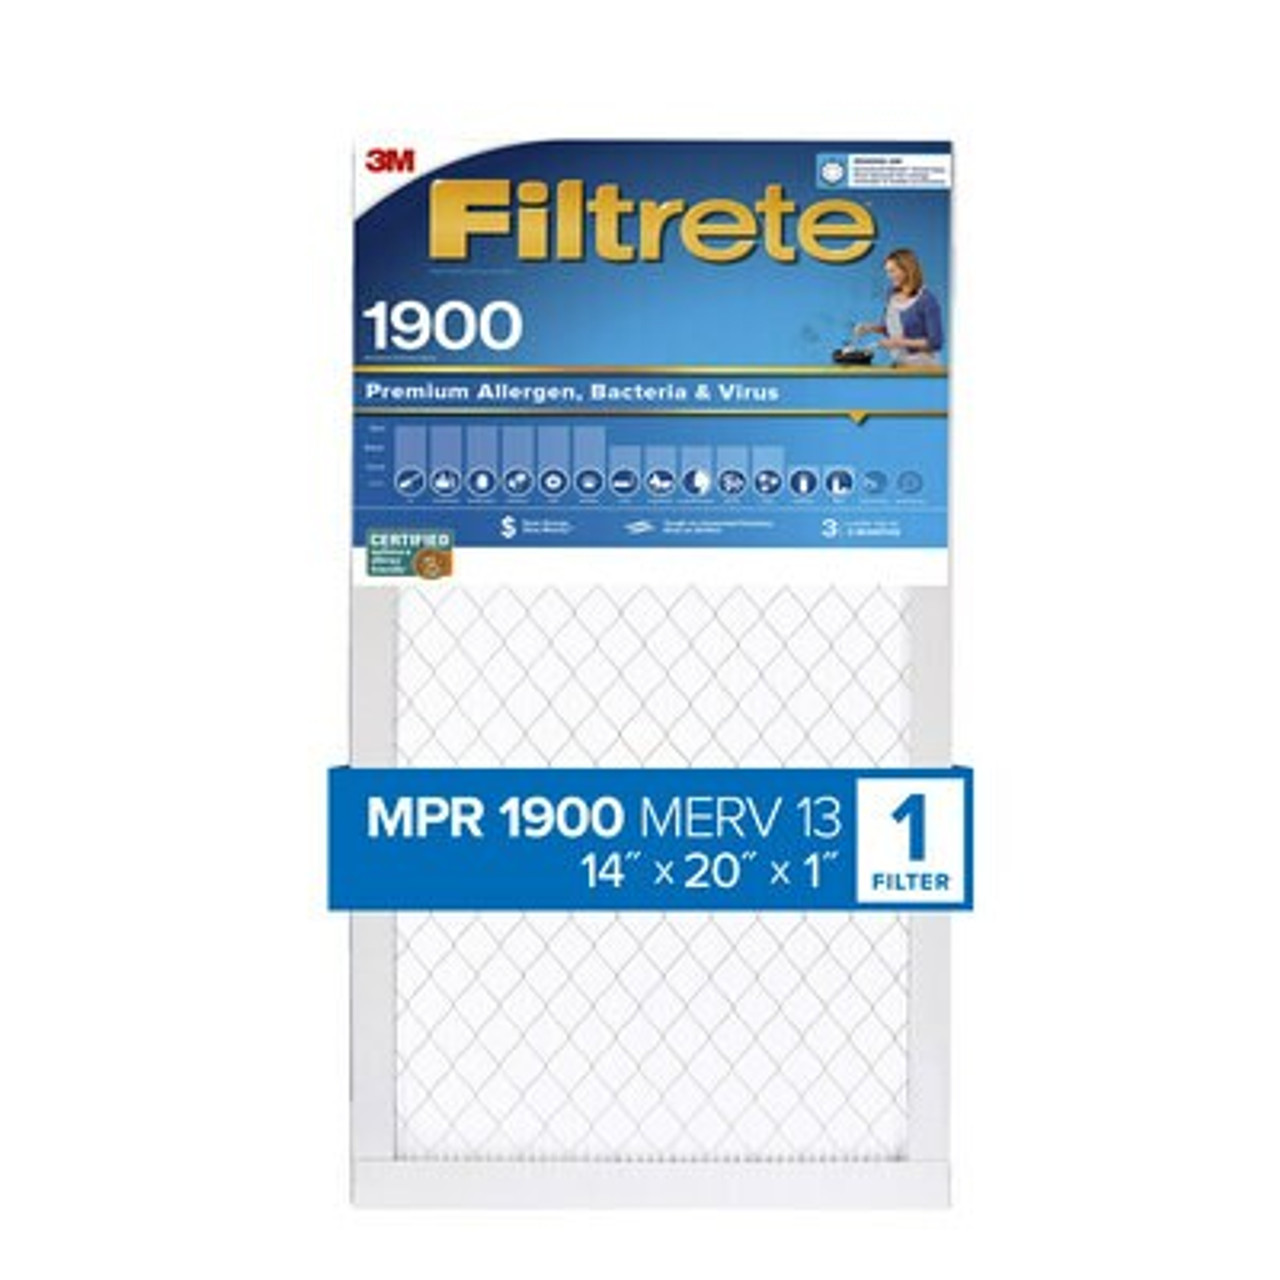 Filtrete™ High Performance Air Filter 1900 MPR UA05-4, 14 in x 20 in x 1 in